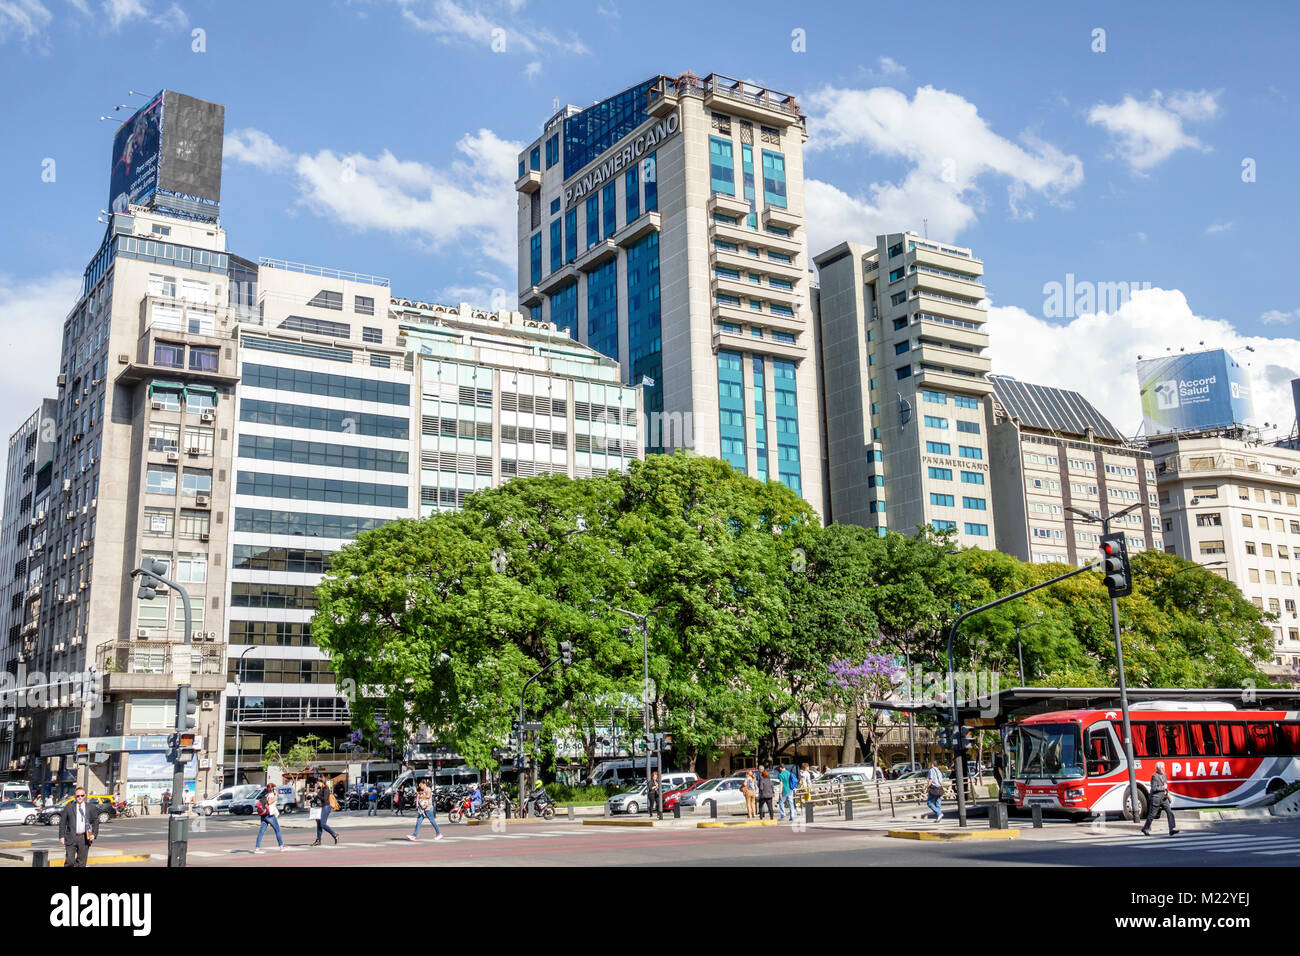 Buenos Aires Argentina,Avenida 9 de Julio,July 9 Avenue,major road,city skyline,buildings,bus,traffic,Hispanic,Argentinean Argentinian Argentine,South Stock Photo